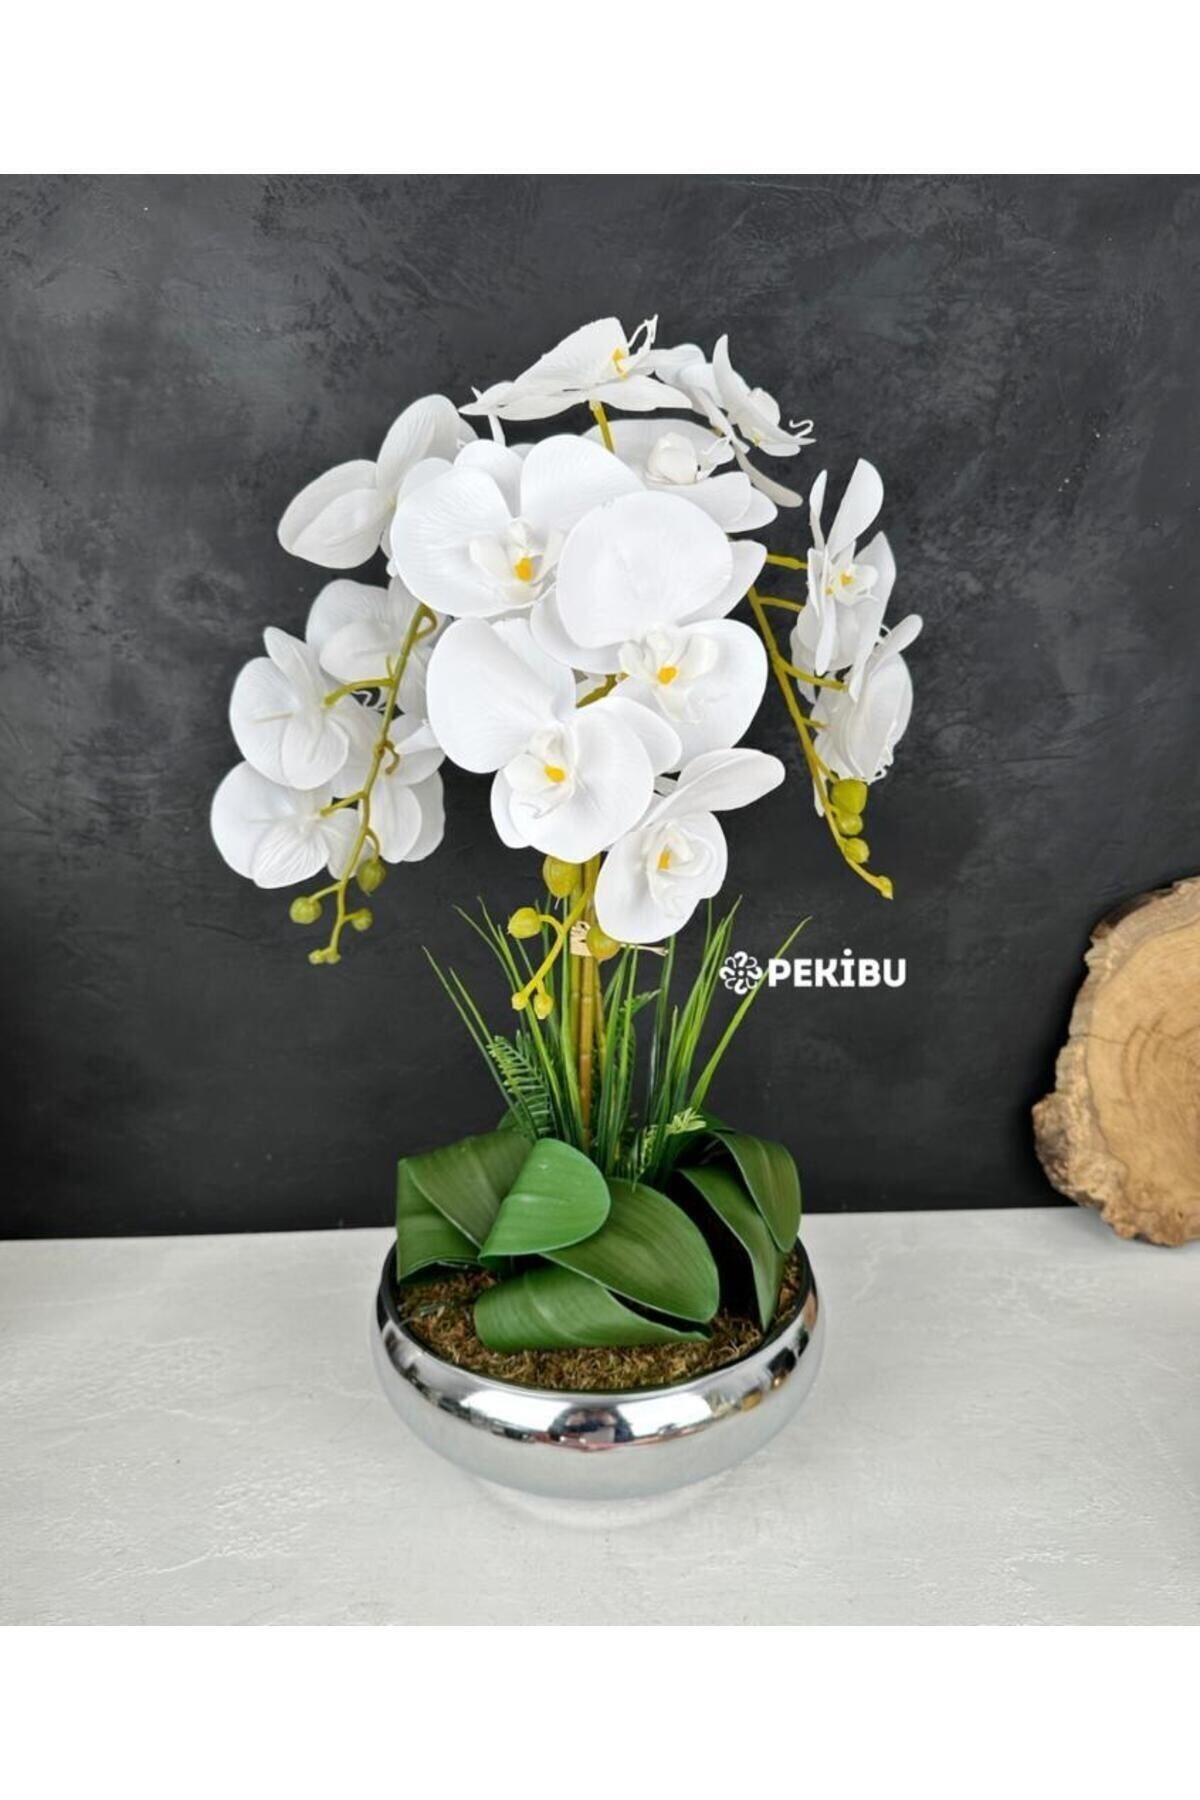 PEKİBU Gümüş Ufo Saksıda 3 Dal Islak Orkide Aranjmanı